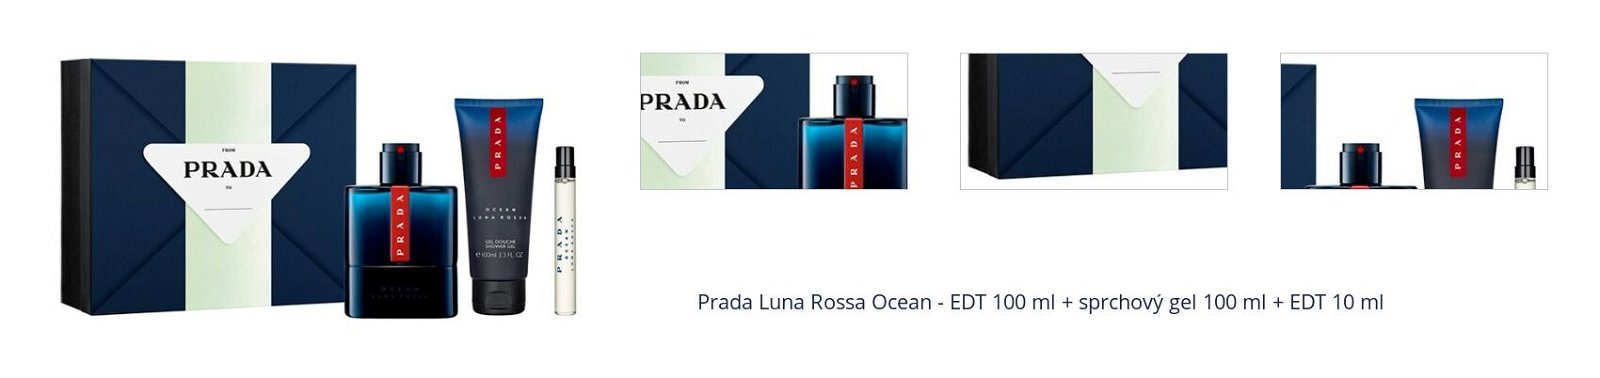 Prada Luna Rossa Ocean - EDT 100 ml + sprchový gel 100 ml + EDT 10 ml 1